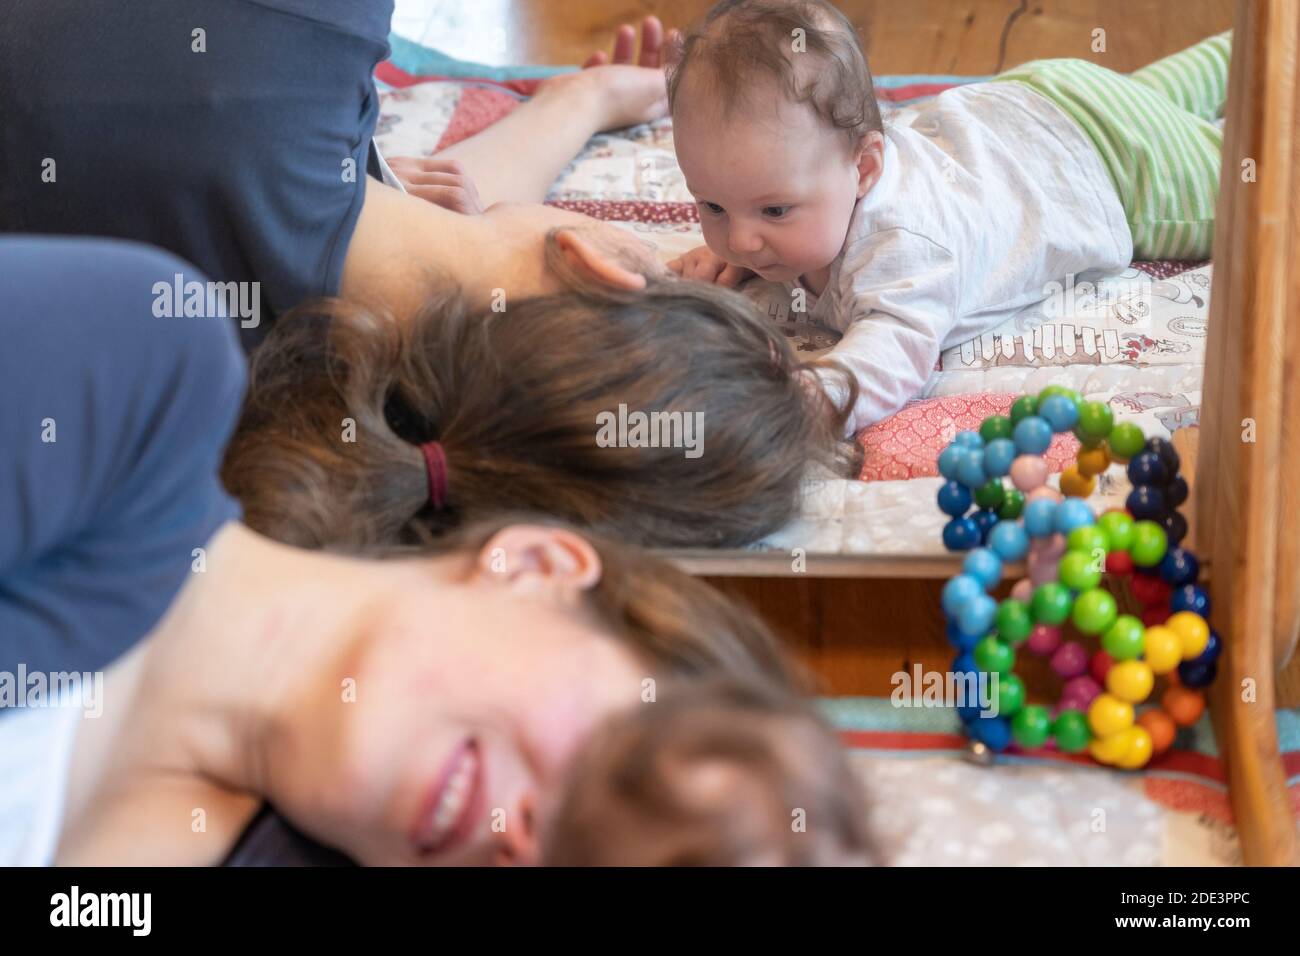 Eine Mutter, die mit ihrer 4 Monate alten Tochter interagiert und spielt, wobei beide auf einer Spielmatte mit einem Spiegel dahinter liegen, Großbritannien Stockfoto